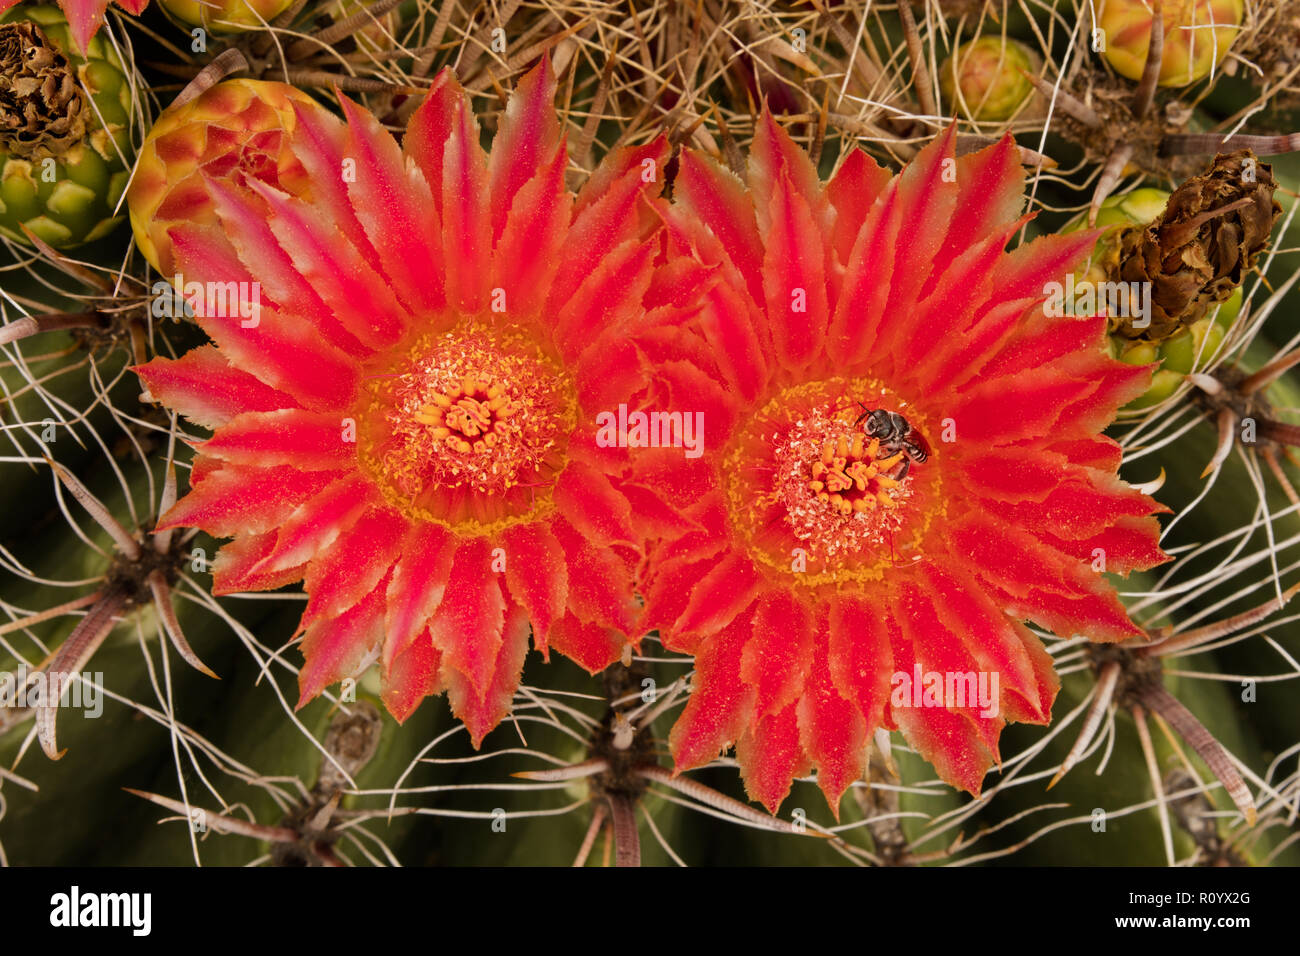 fishhook barrel cactus,Ferocactus wislizeni, and native bee, Arizona Stock Photo